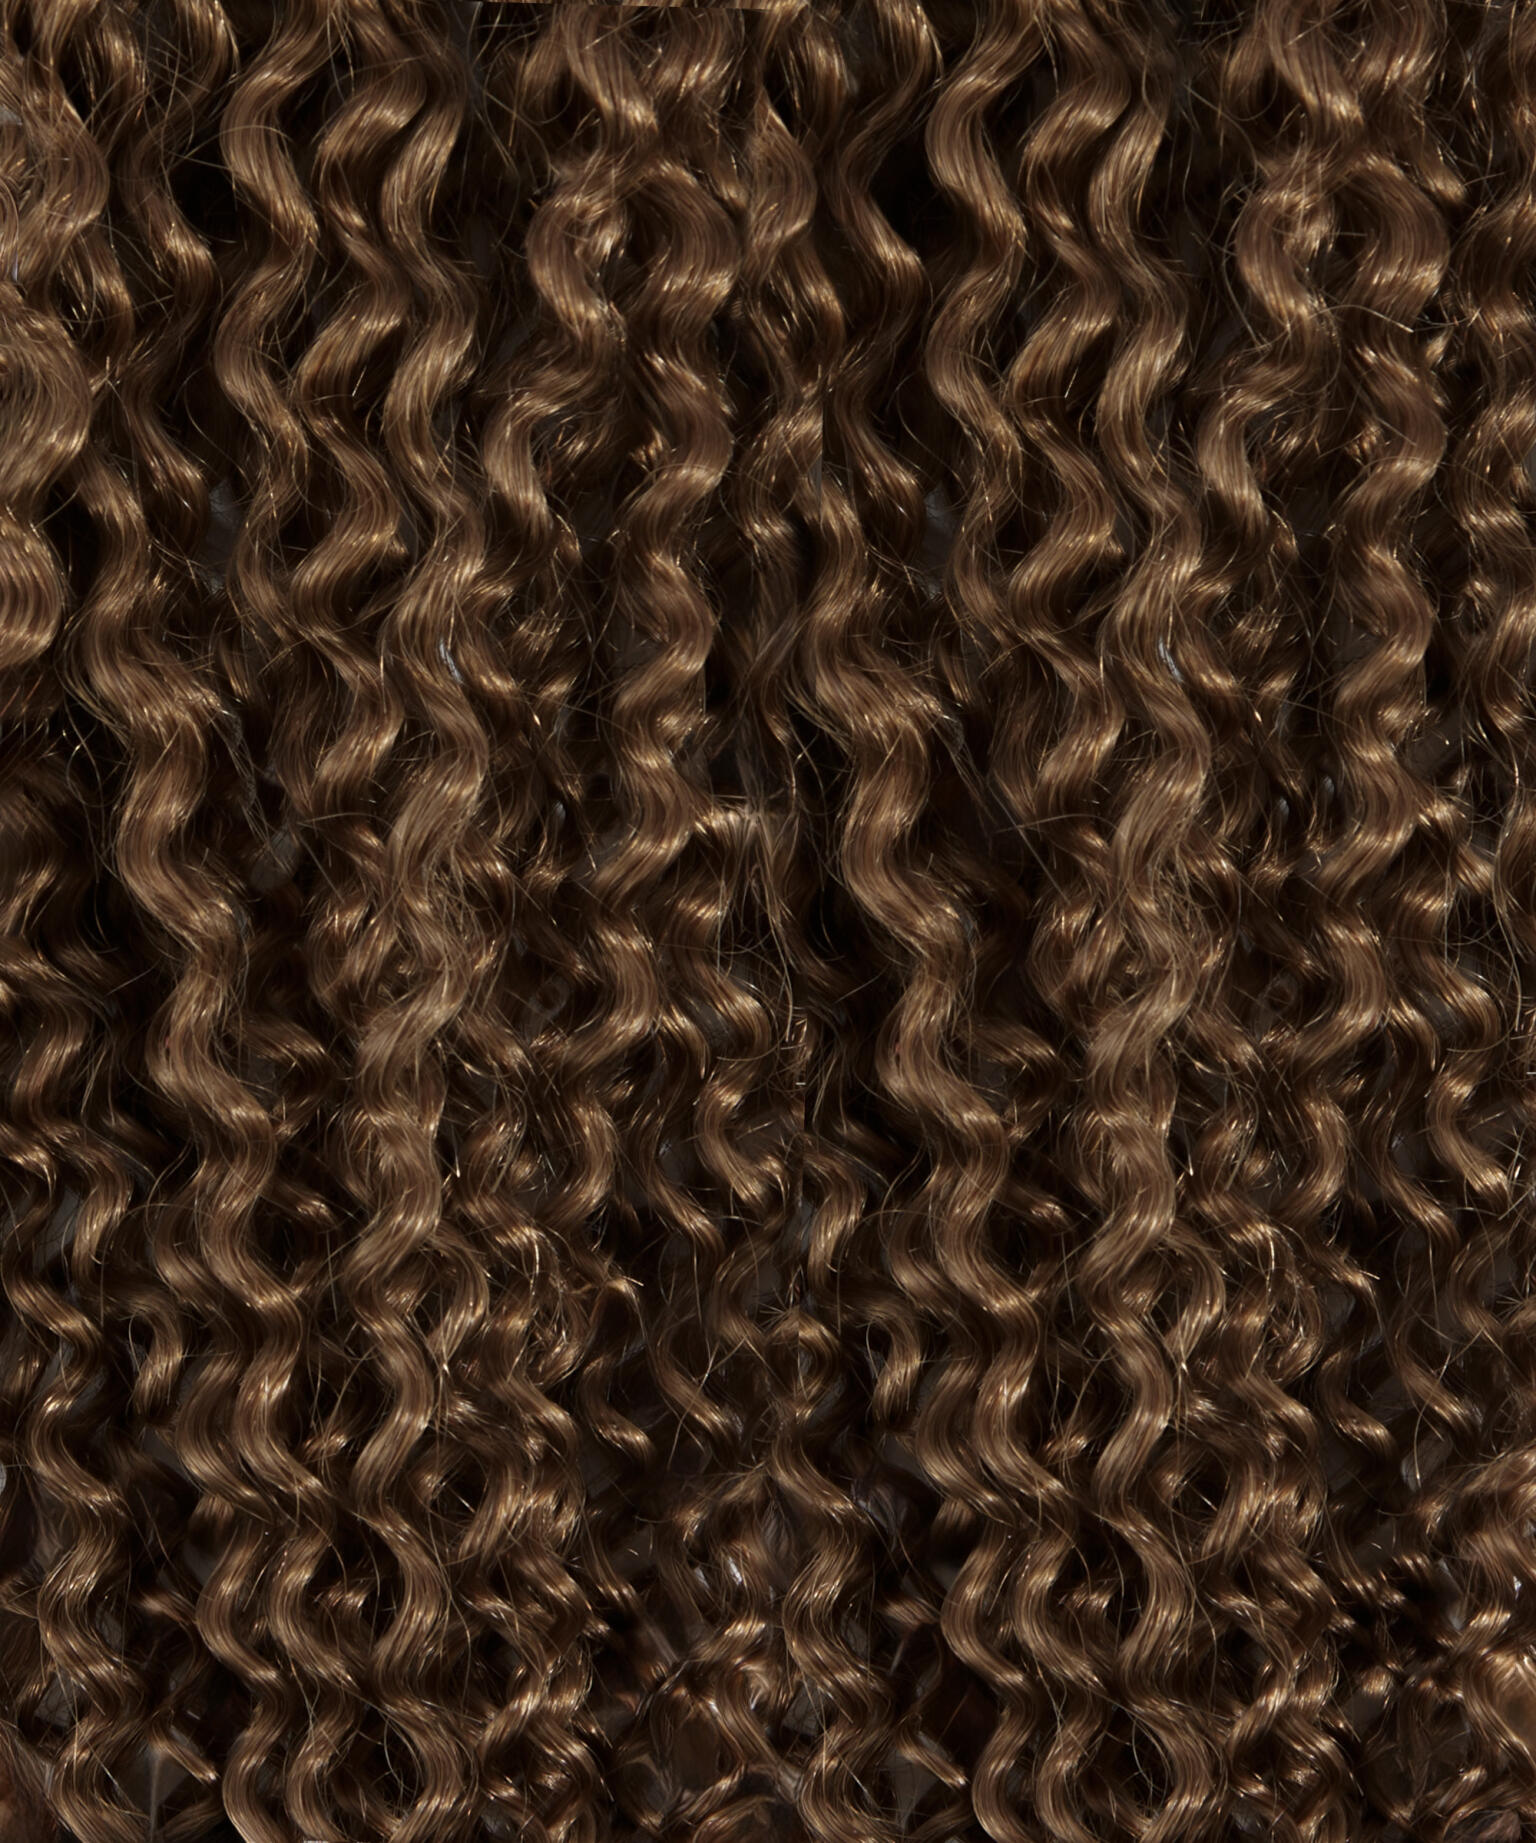 Premium Keratin Extensions Spiral Curls 20 pieces M7.3/10.8 Cendre Ash Blonde Mix 60 cm